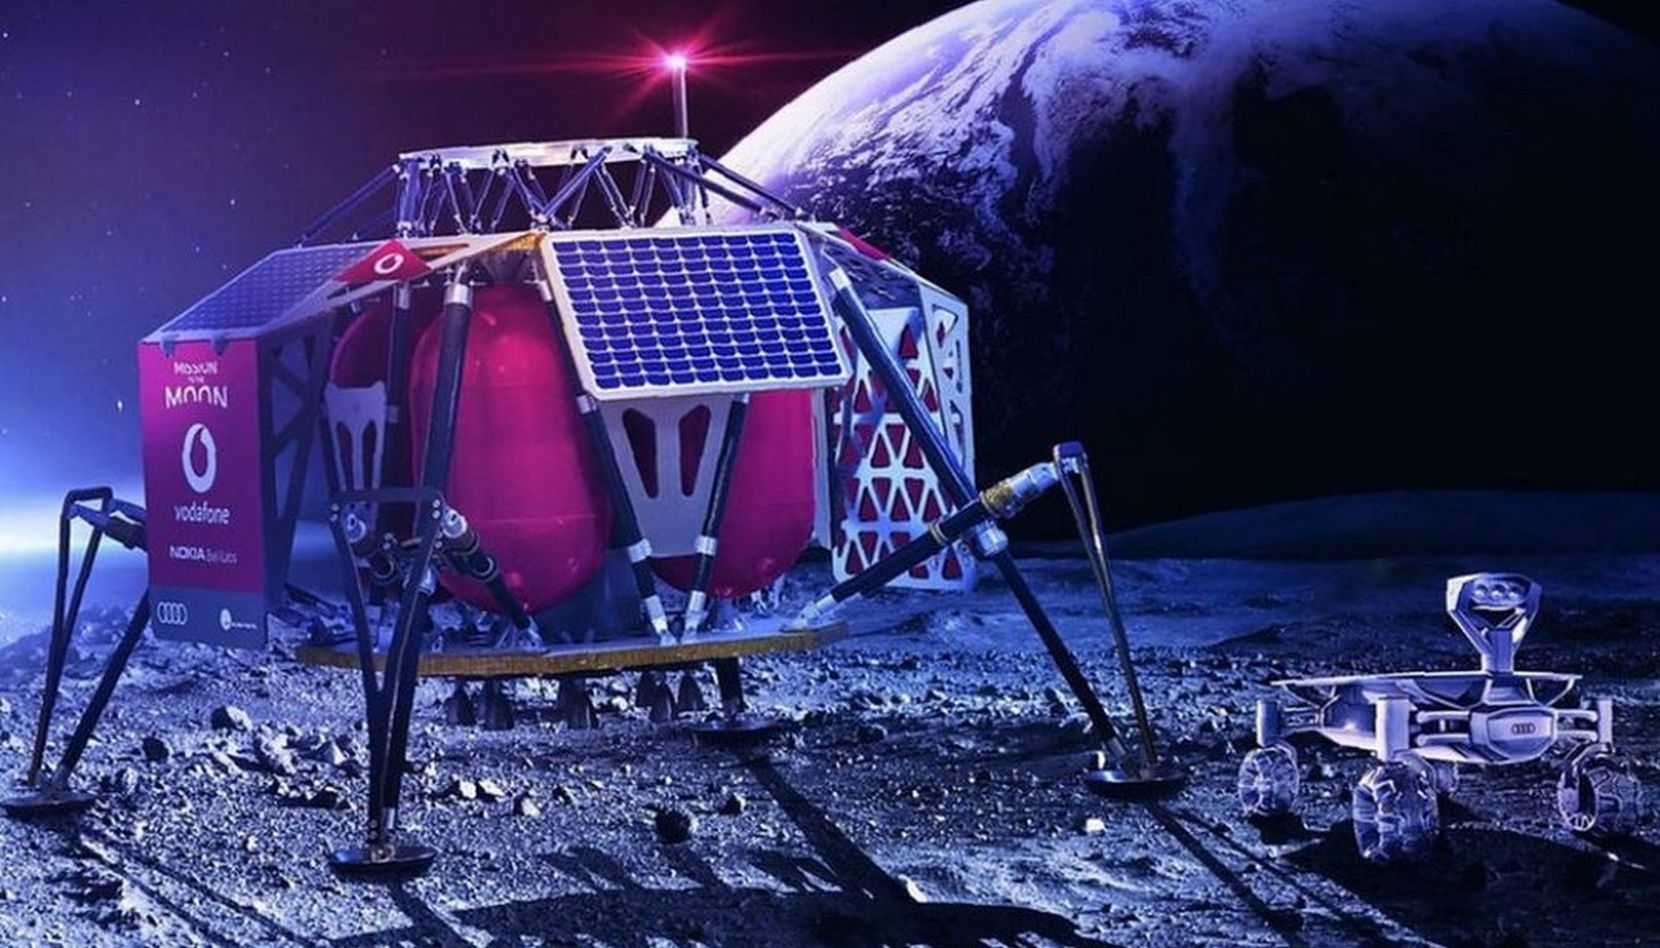 Le module lunaire Alina intègrera la station de base qui établira une connexion cellulaire 4G avec les deux rovers Audi qui iront explorer la Lune et renverront des images en haute définition. © Vodafone